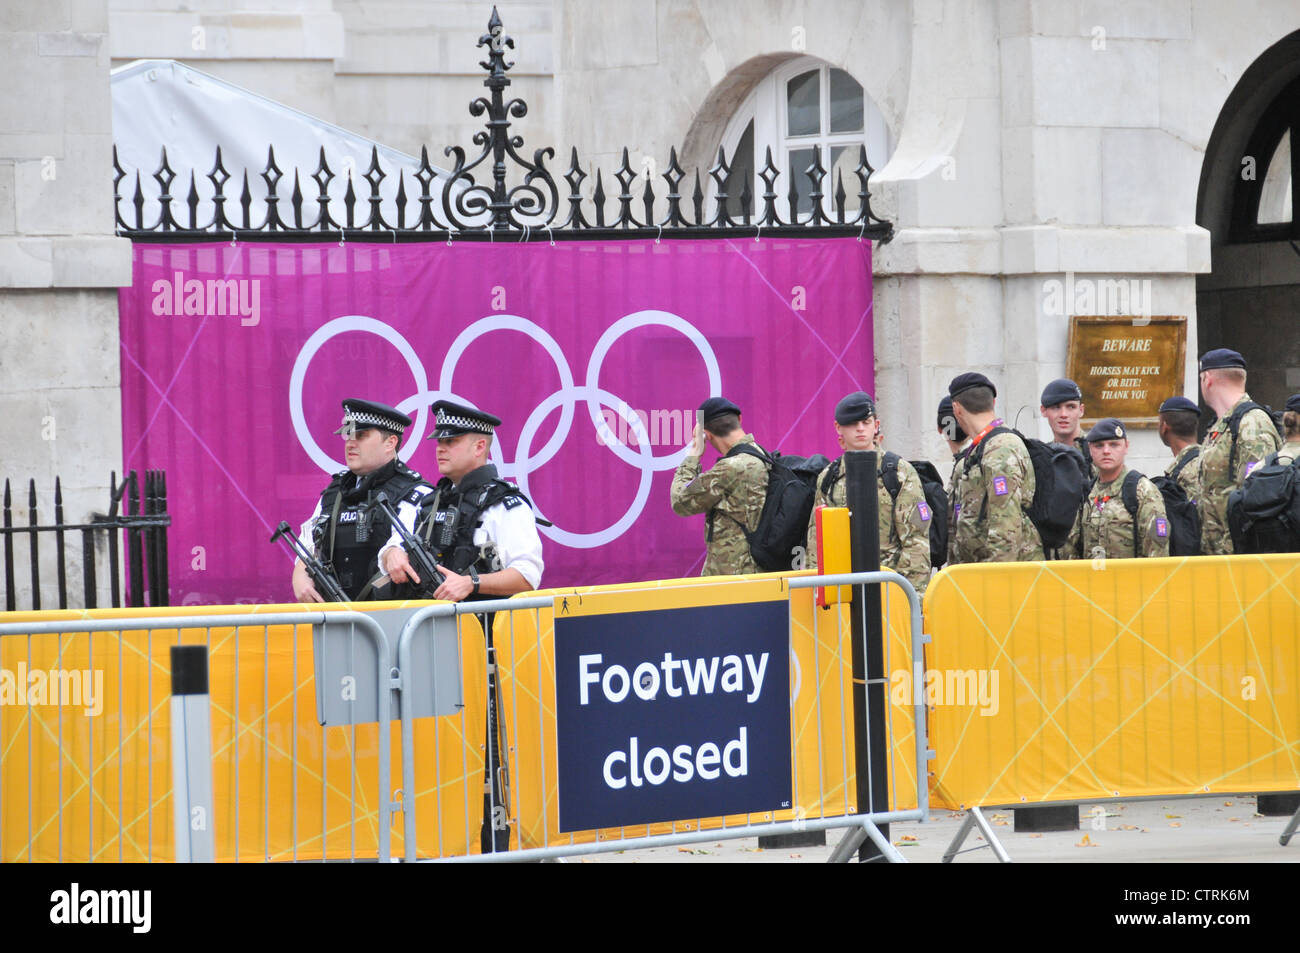 Les symboles des Jeux Olympiques de Londres 2012 typeface Anneaux olympiques Horseguards soldats armés d'armes à feu des agents de police de sécurité Banque D'Images